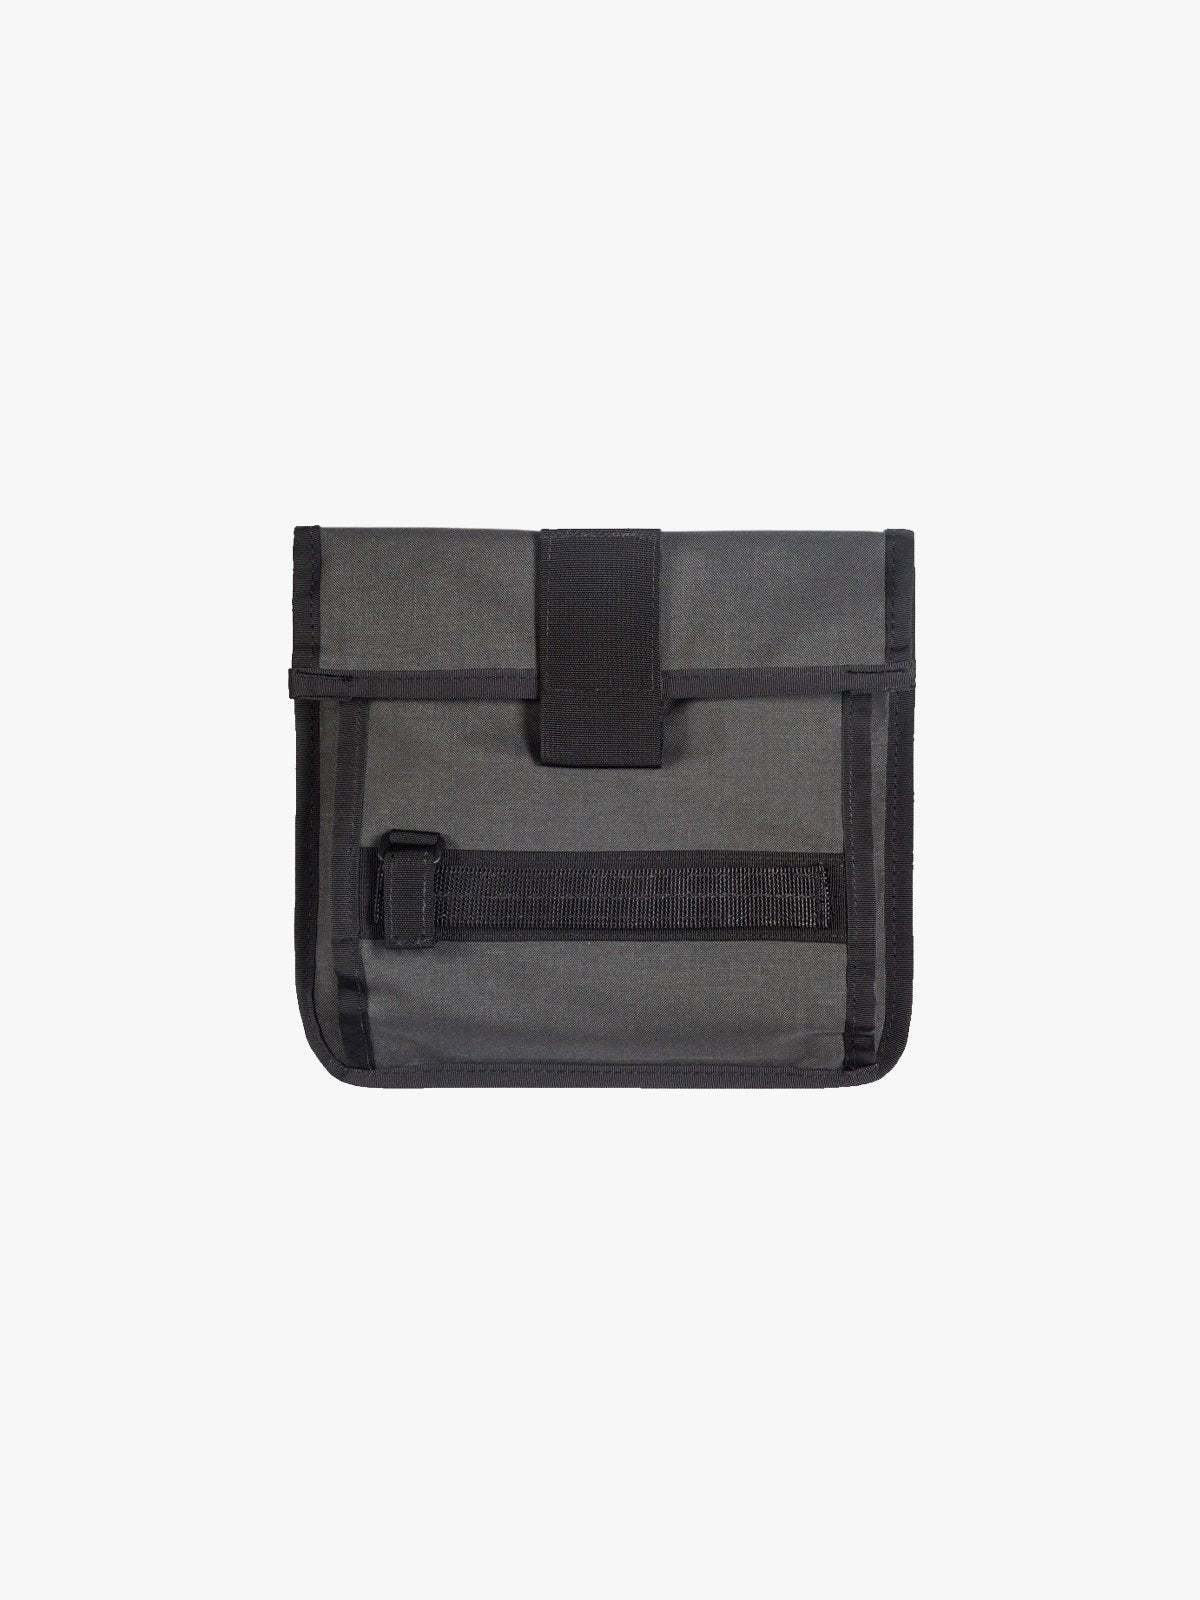 Arkiv Tool Pocket by Mission Workshop - Bolsas impermeables y ropa técnica - San Francisco y Los Angeles - Construidas para durar - Garantizadas para siempre